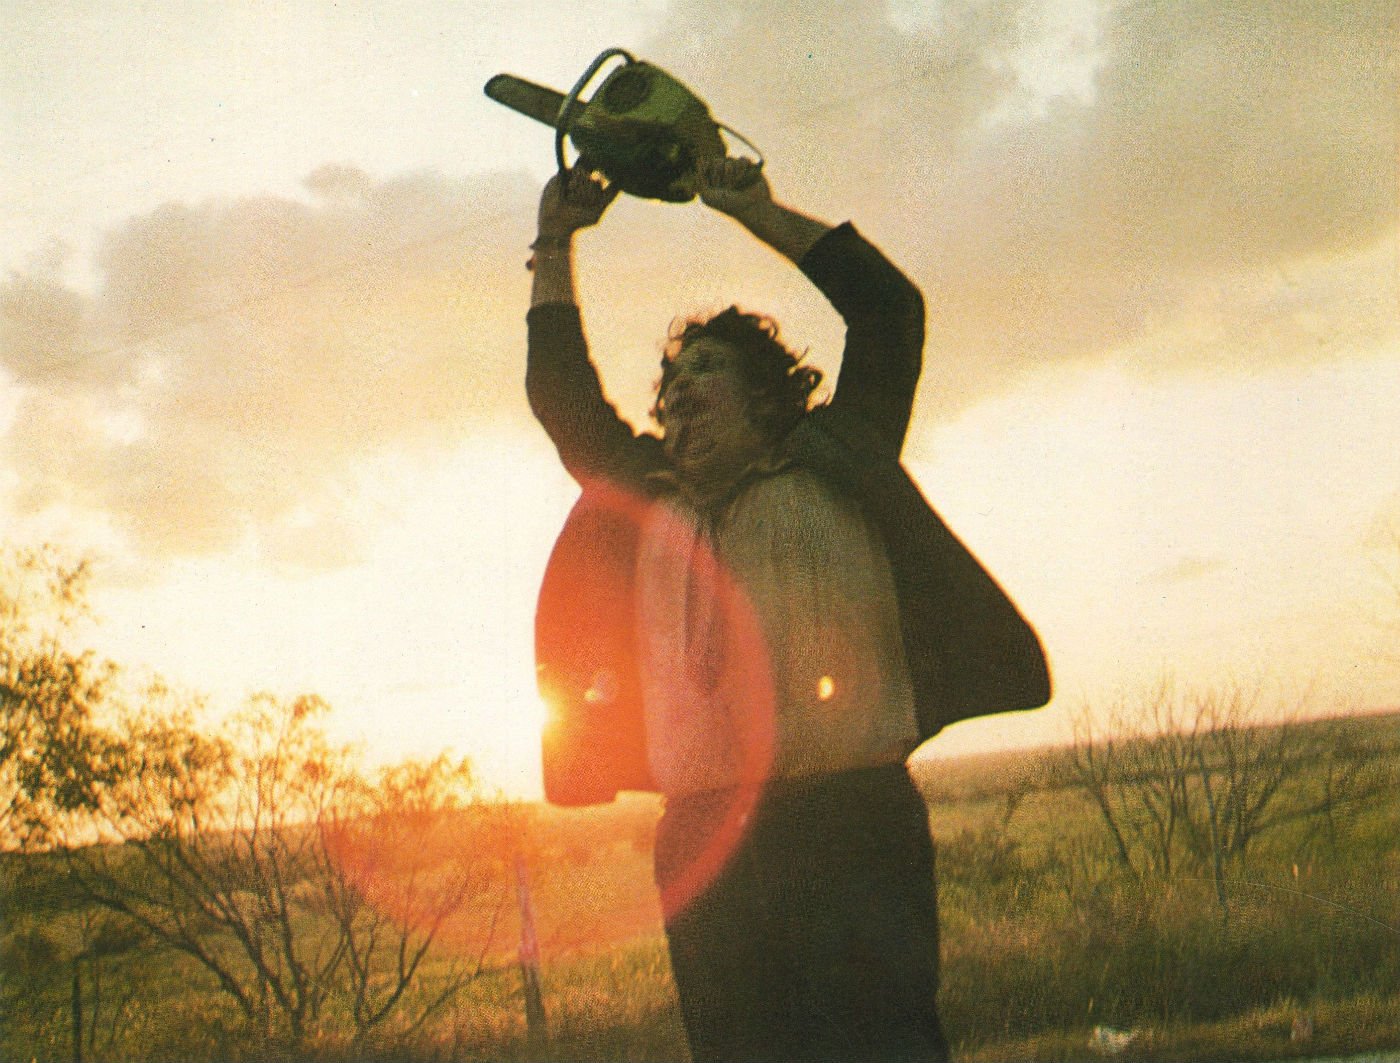 Foto Zum Film The Texas Chainsaw Massacre Bild Auf FILMSTARTS De